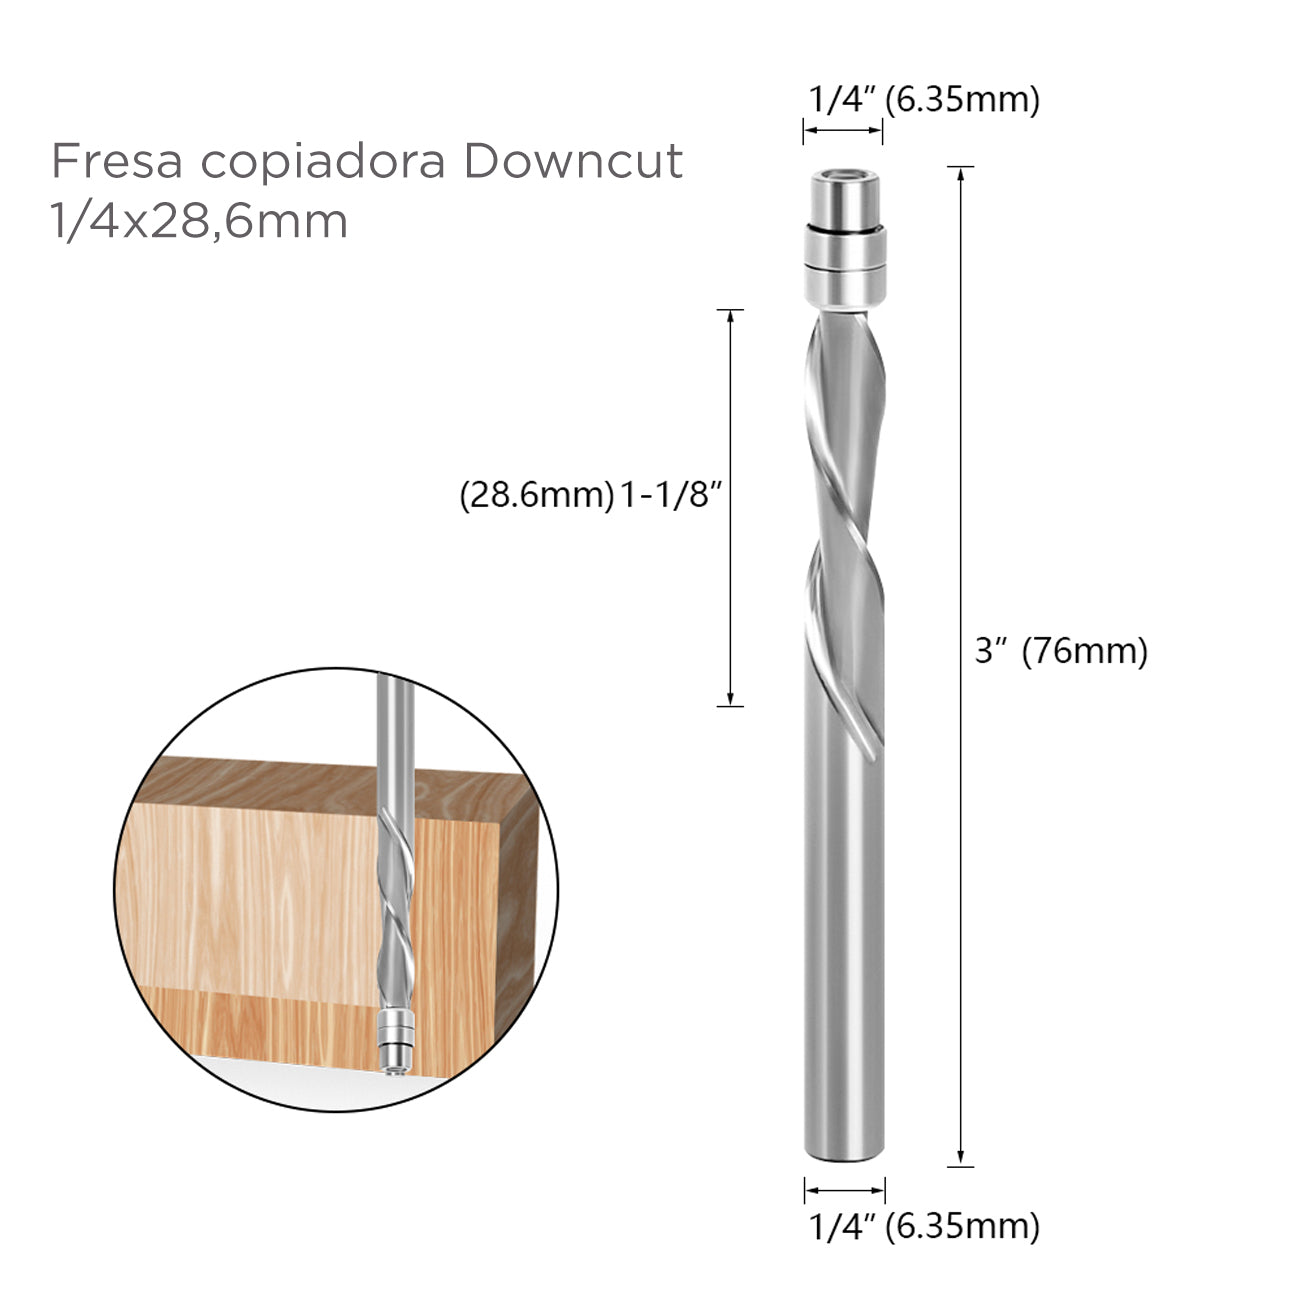 fresa copiadora Downcut 1/4x28,6mm